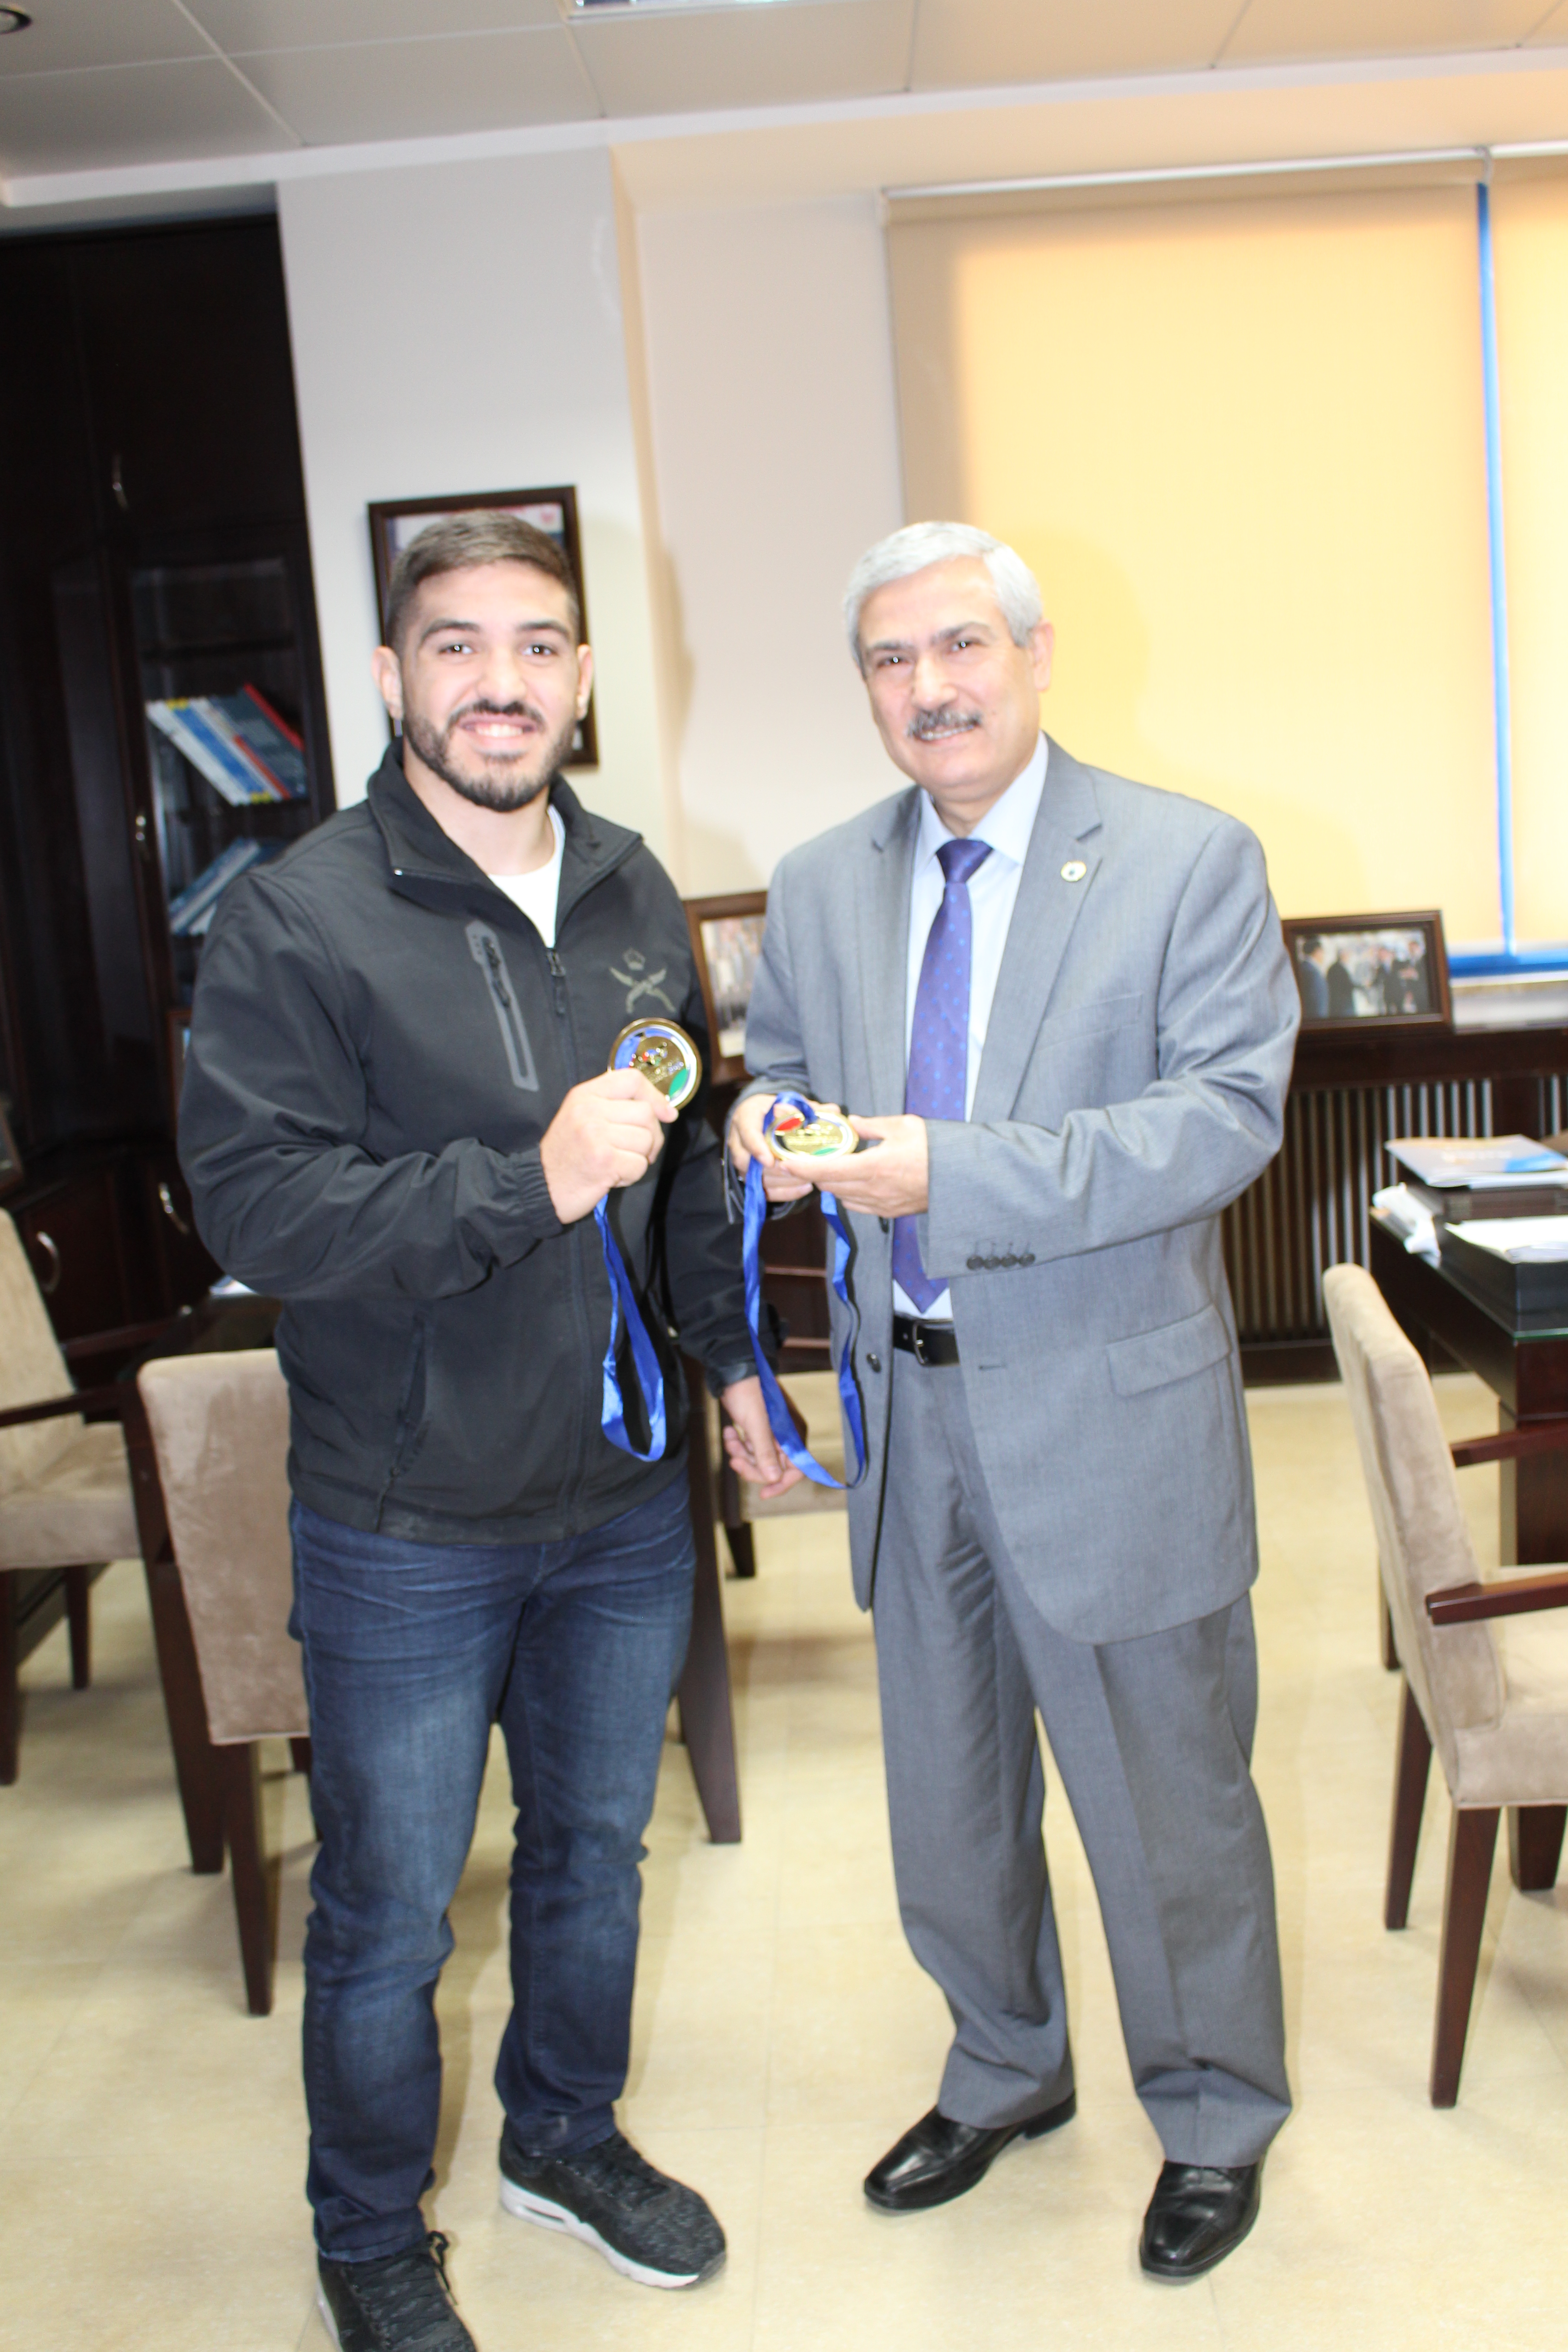 حمزة الرشيد طالب في جامعة الاميرة سمية للتكنولوجيا يتوج بذهبيتين في بطولة العالم للجوجيتسو